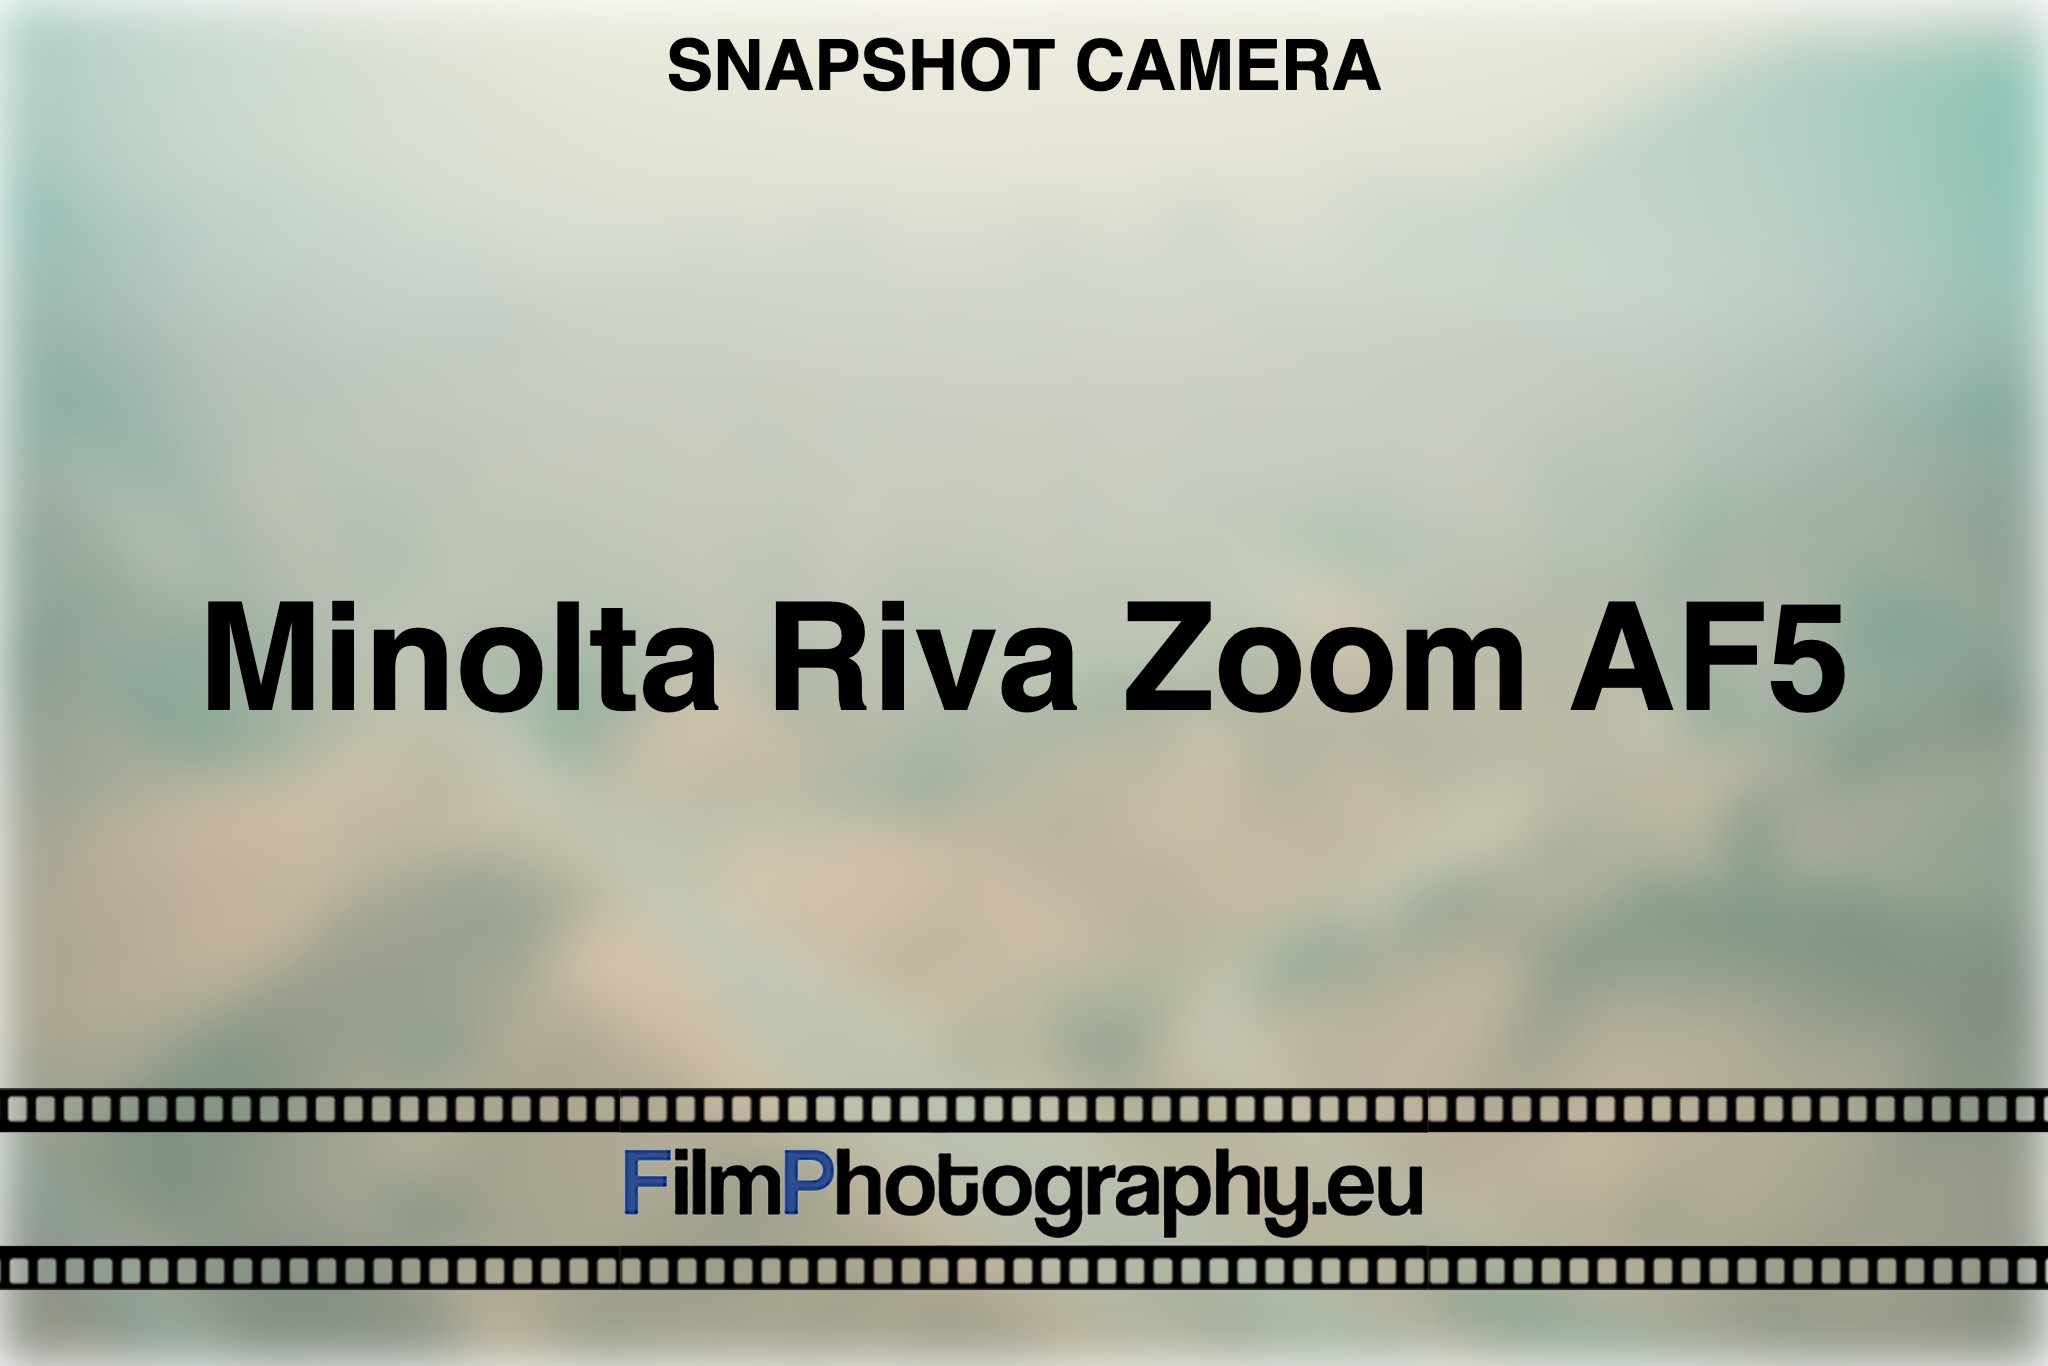 minolta-riva-zoom-af5-snapshot-camera-bnv